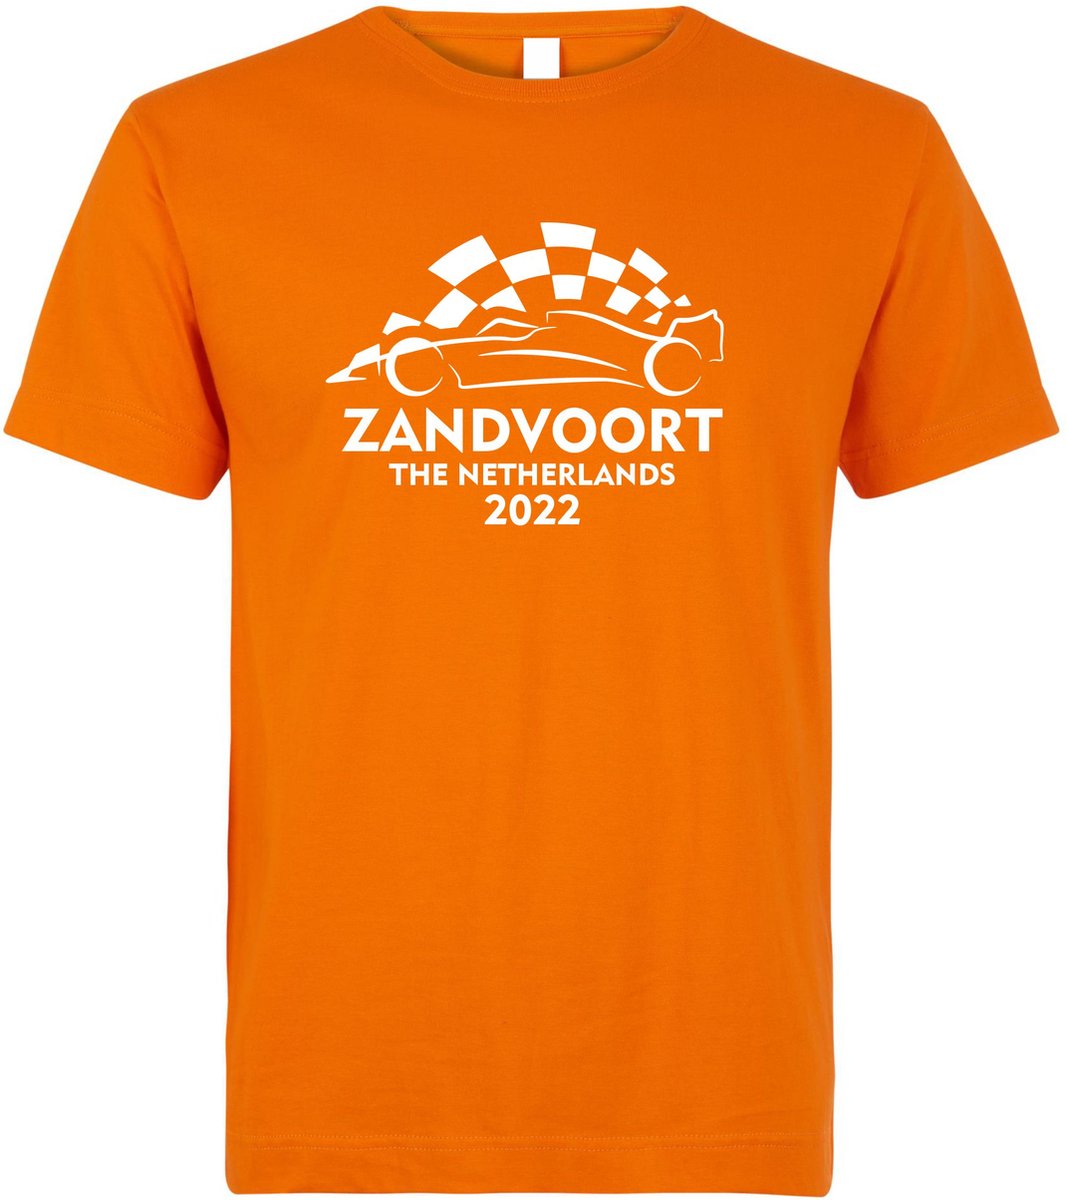 T-shirt kinderen Zandvoort 2022 met raceauto | Max Verstappen / Red Bull Racing / Formule 1 fan | Grand Prix Circuit Zandvoort | kleding shirt | Oranje | maat 164